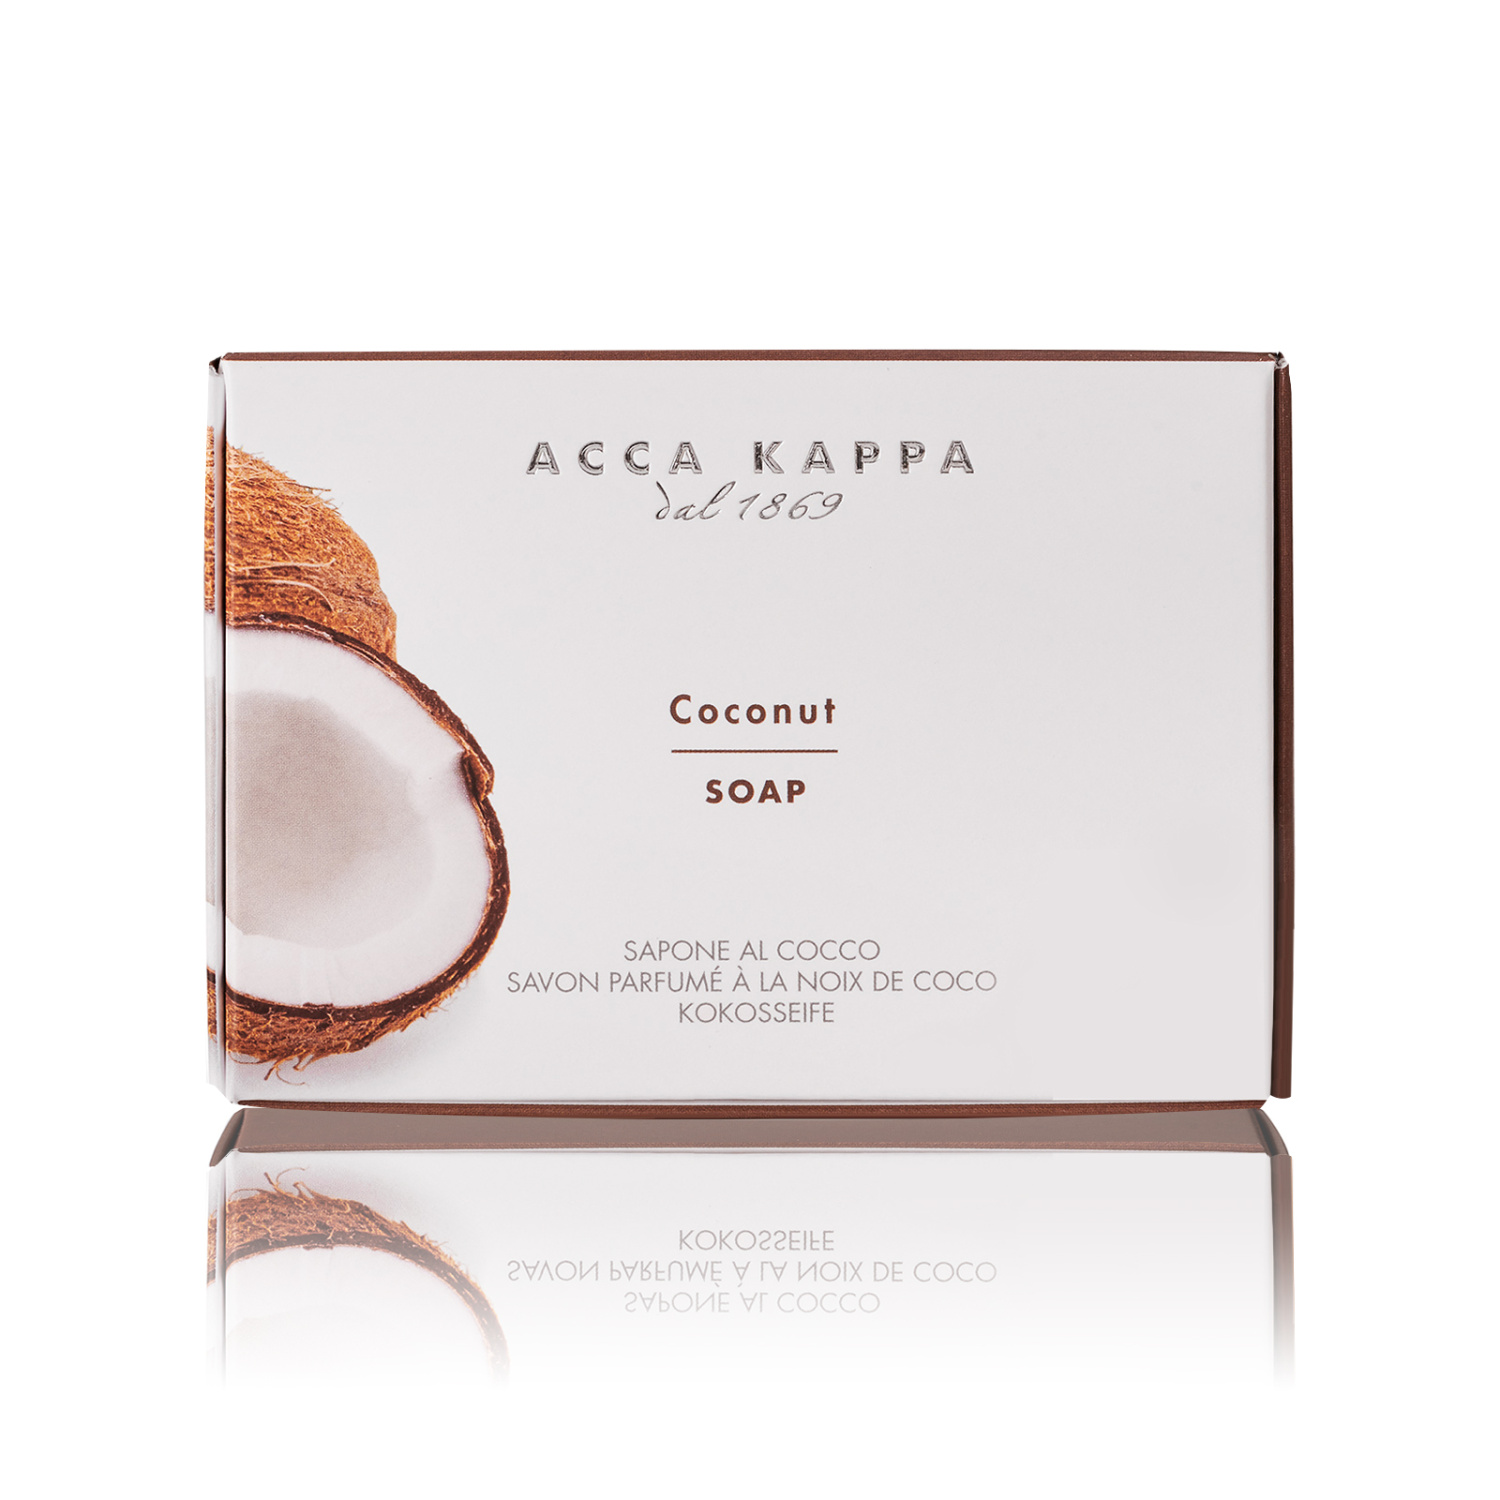 Acca Kappa Coconut Soap 150g - интернет-магазин профессиональной косметики Spadream, изображение 48856